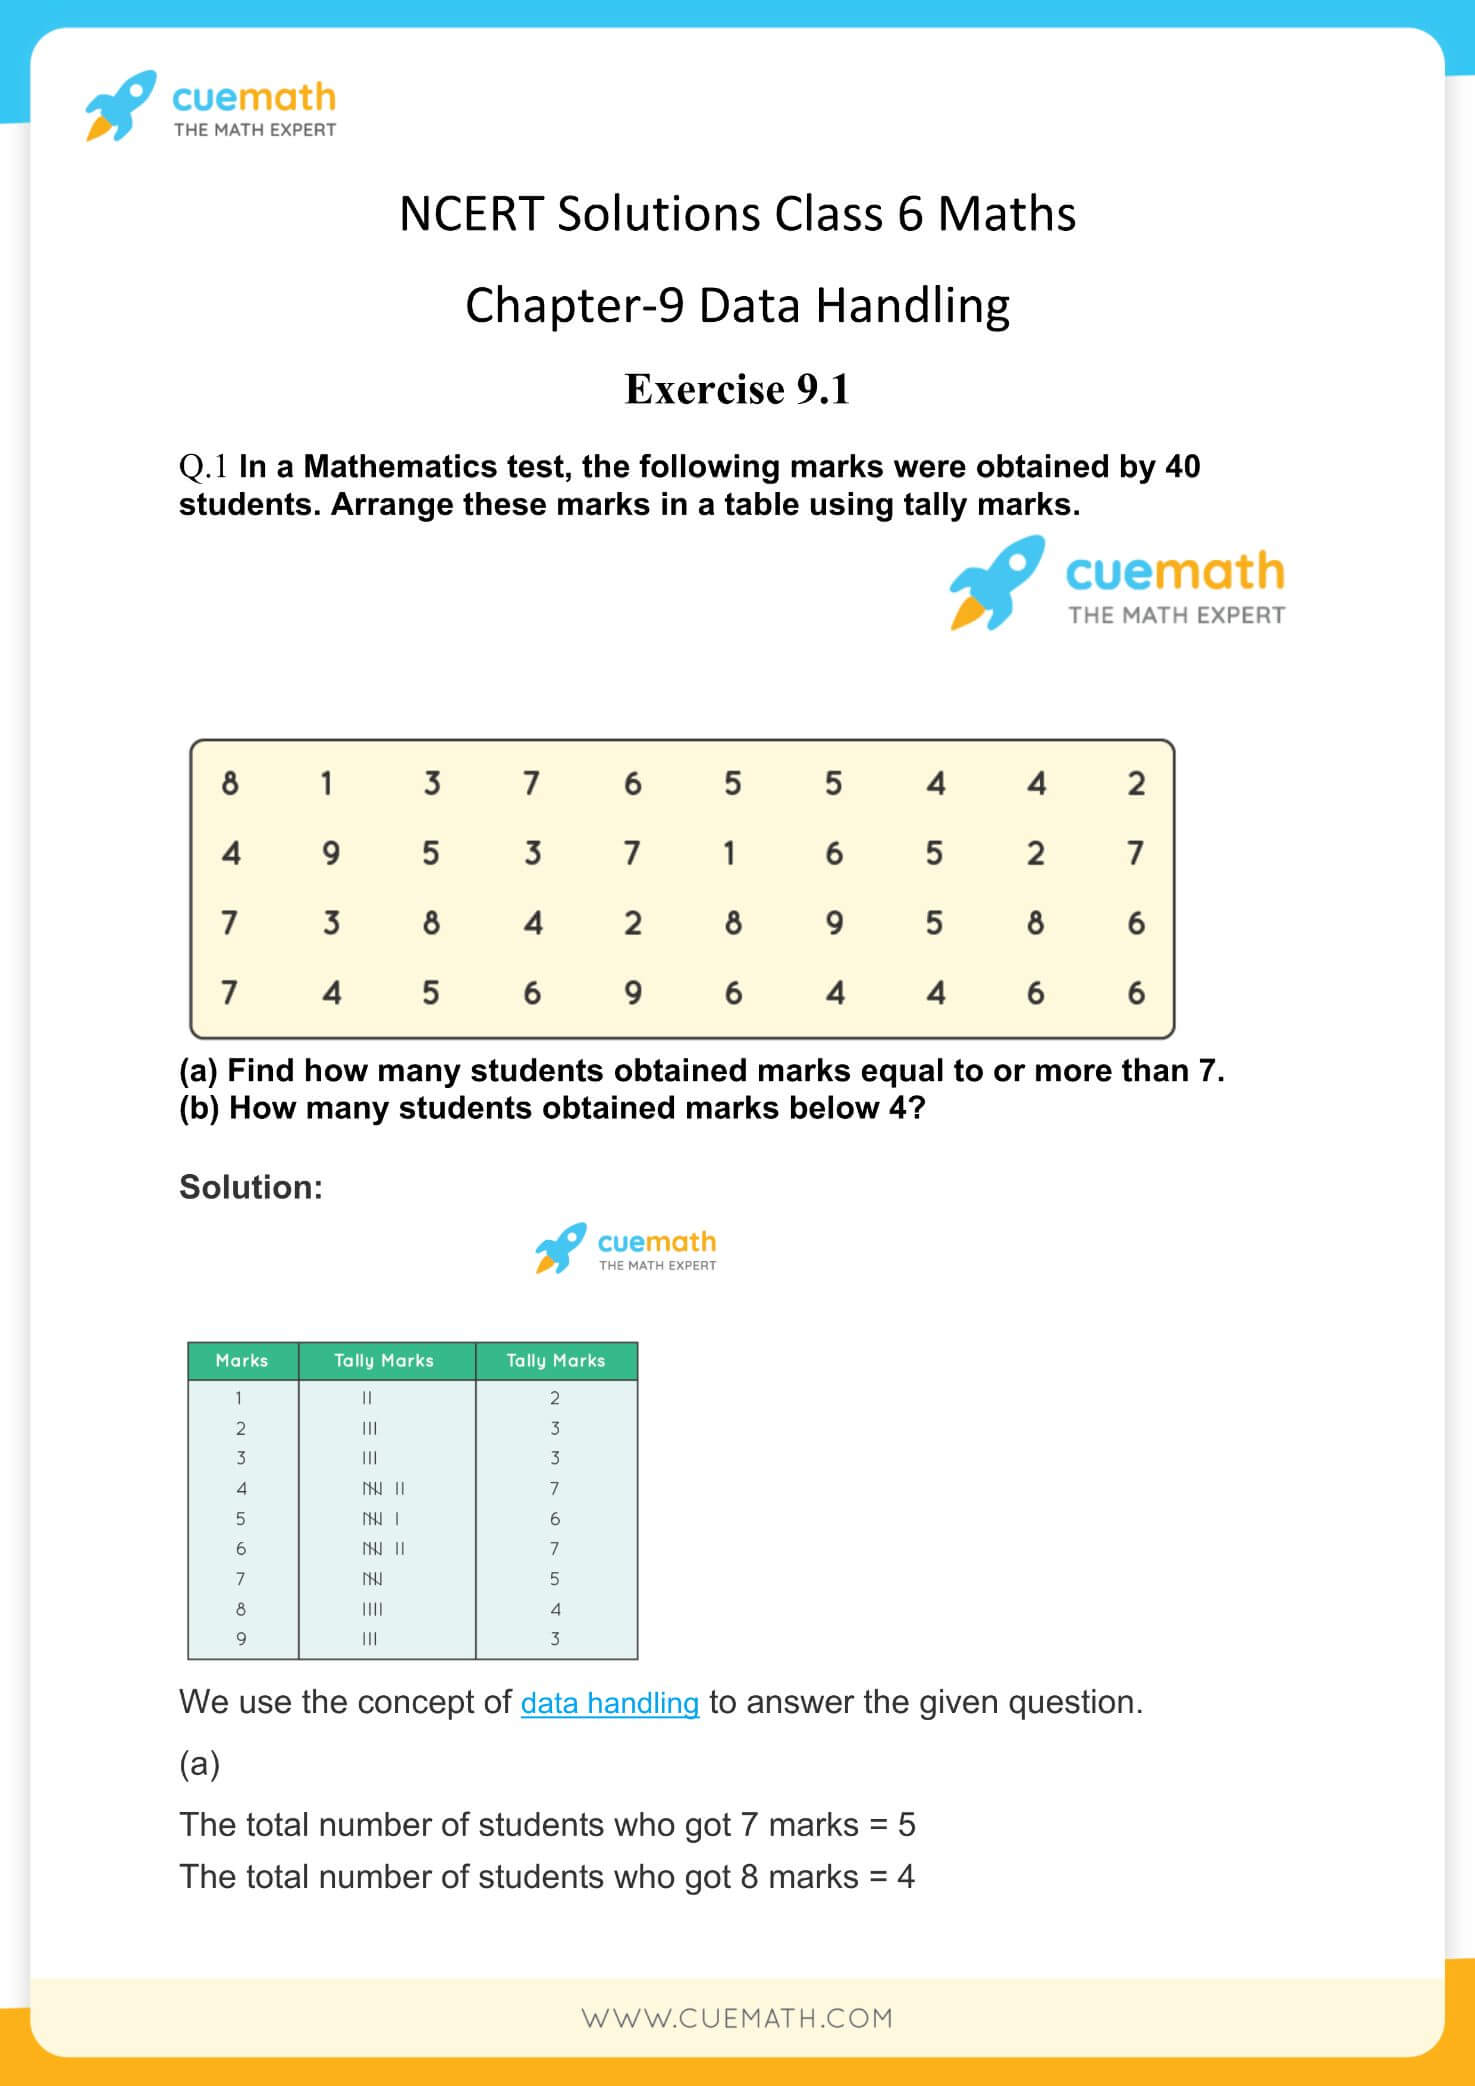 NCERT Solutions Class 6 Maths Chapter 9